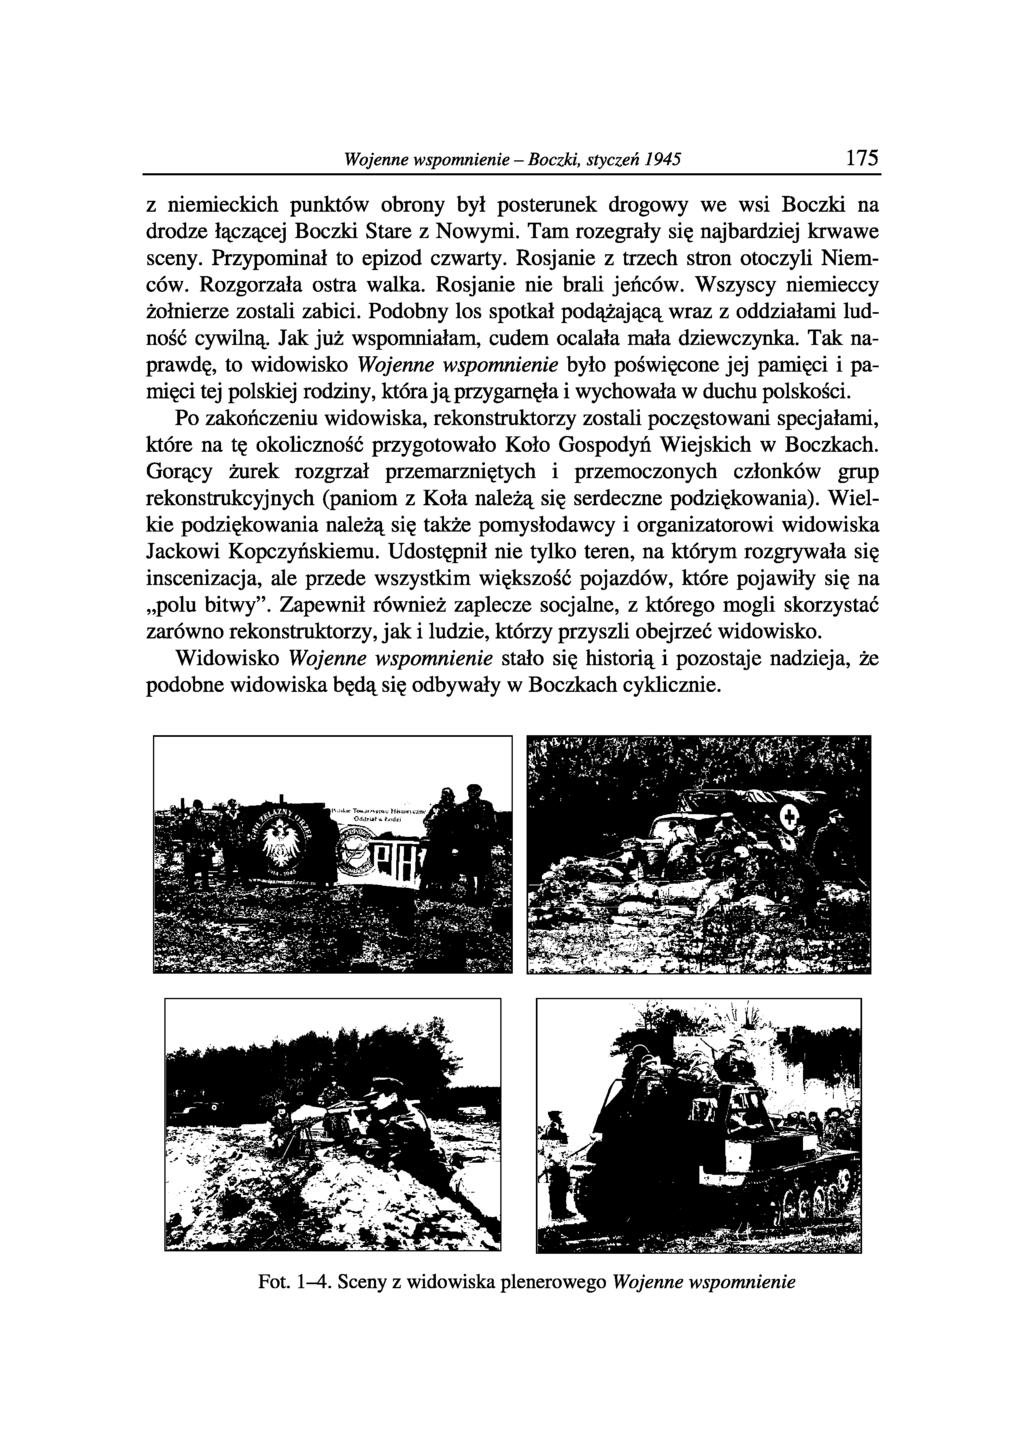 Wojenne wspomnienie - Boczki, styczeń 1945 175 z niemieckich punktów obrony był posterunek drogowy we wsi Boczki na drodze łączącej Boczki Stare z